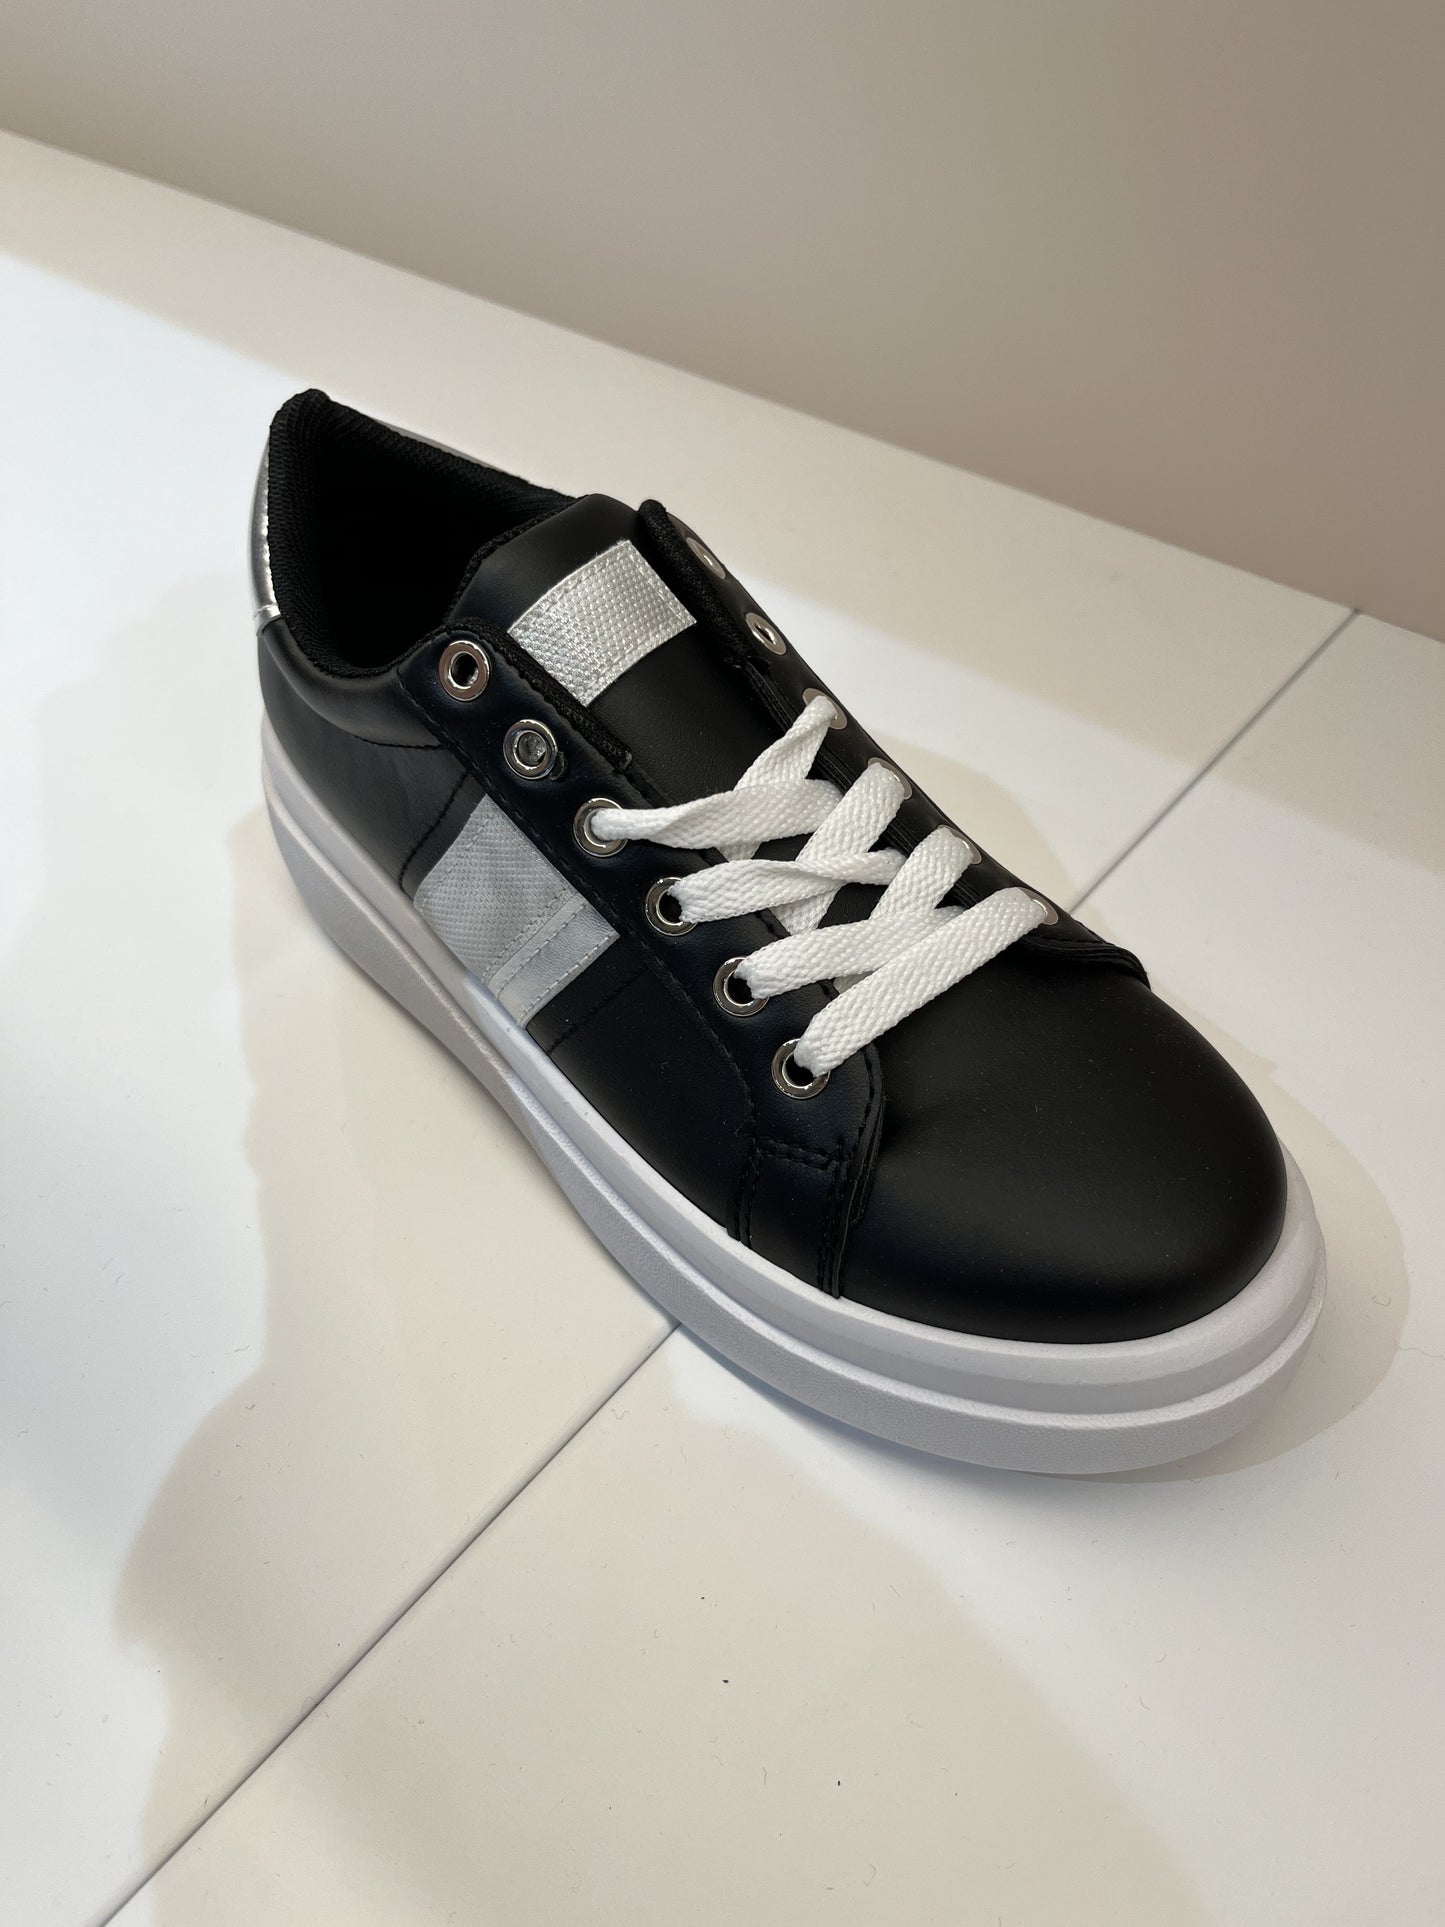 Sneakers a cassetta nero con banda argento glitter